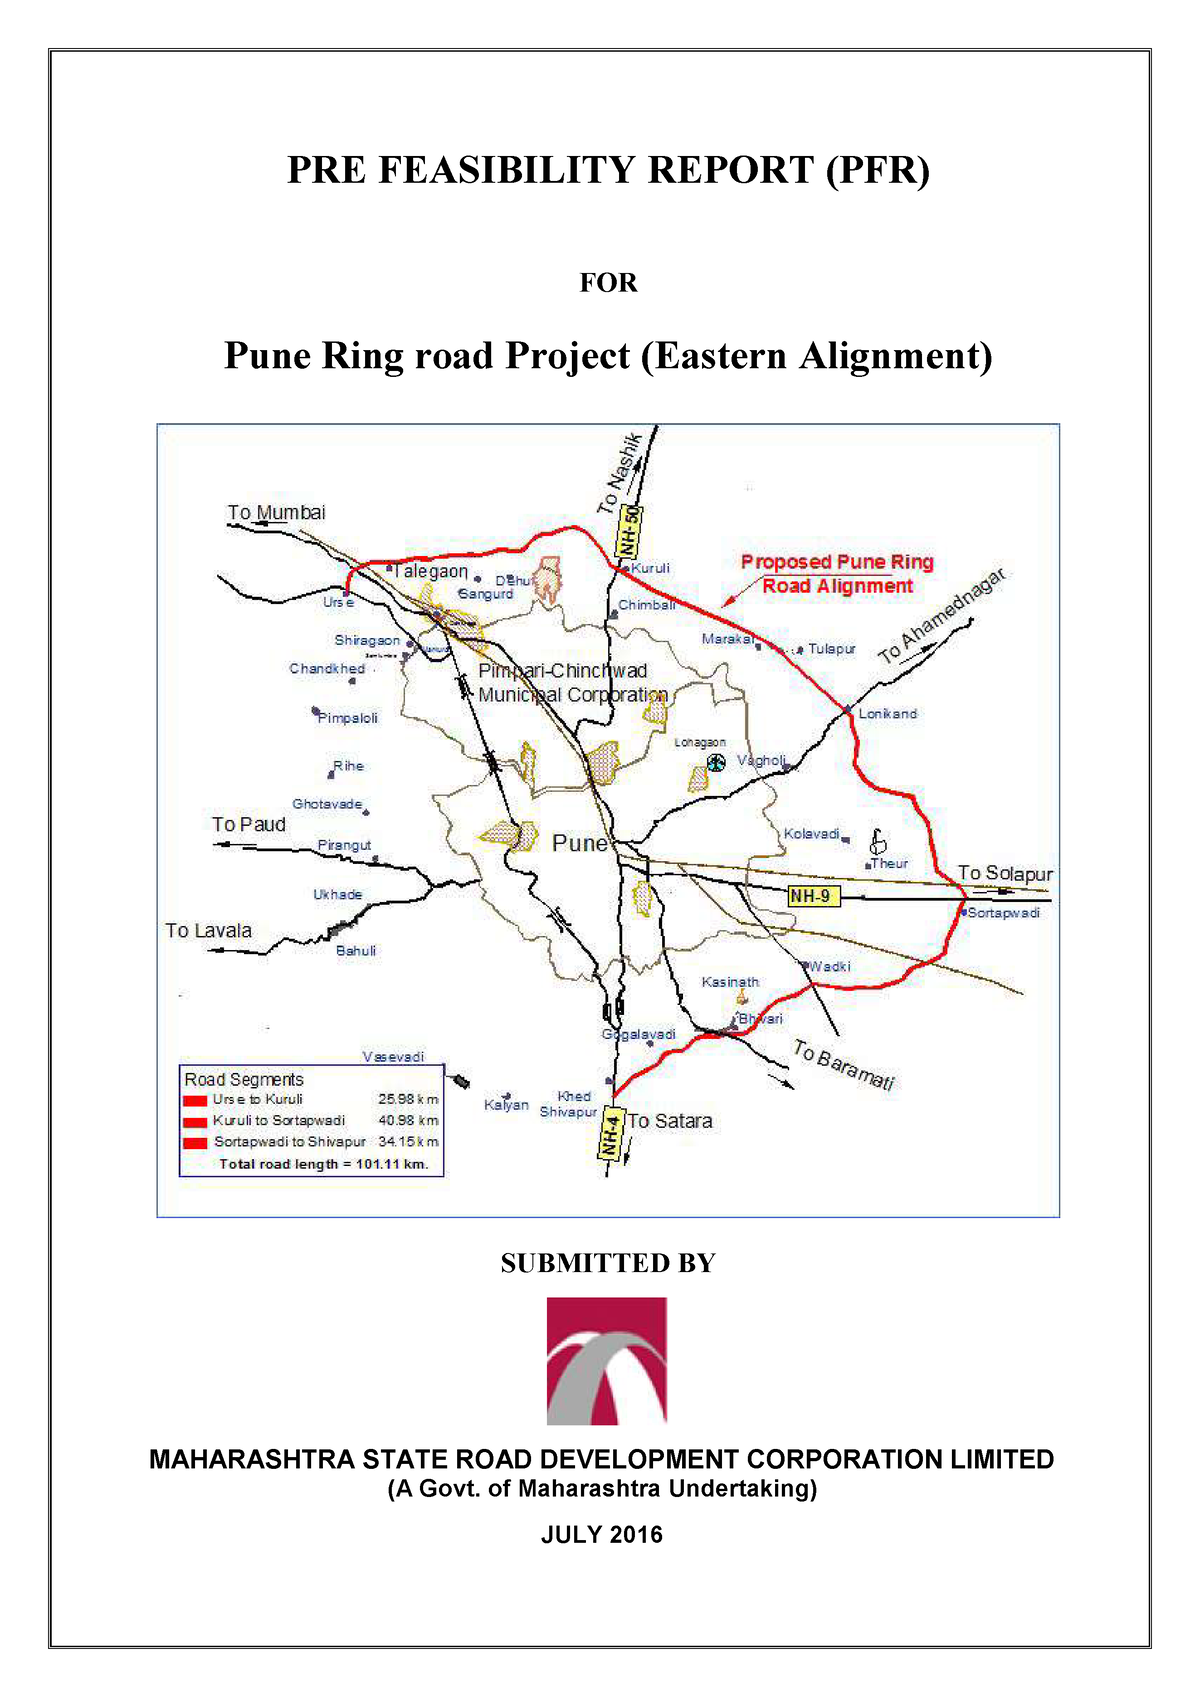 Pune ring road project full details | पुणे रिंग रोड बद्दल संपूर्ण माहिती |  कोणत्या गावातून जाणार | - YouTube